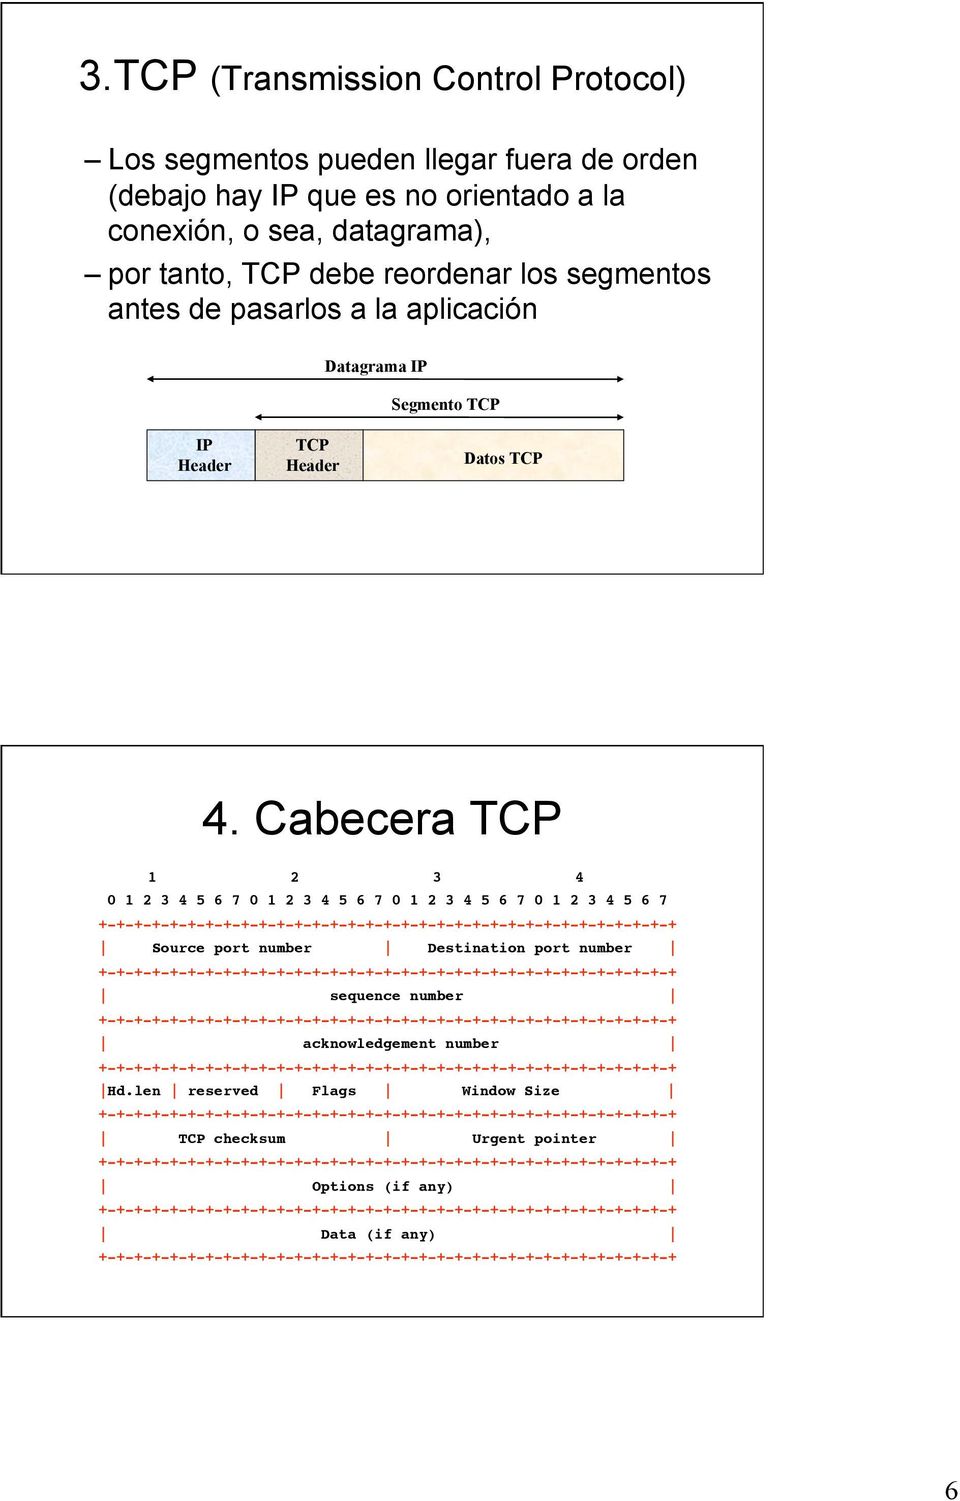 Cabecera TCP 1 2 3 4 0 1 2 3 4 5 6 7 0 1 2 3 4 5 6 7 0 1 2 3 4 5 6 7 0 1 2 3 4 5 6 7 +-+-+-+-+-+-+-+-+-+-+-+-+-+-+-+-+-+-+-+-+-+-+-+-+-+-+-+-+-+-+-+-+ Source port number Destination port number